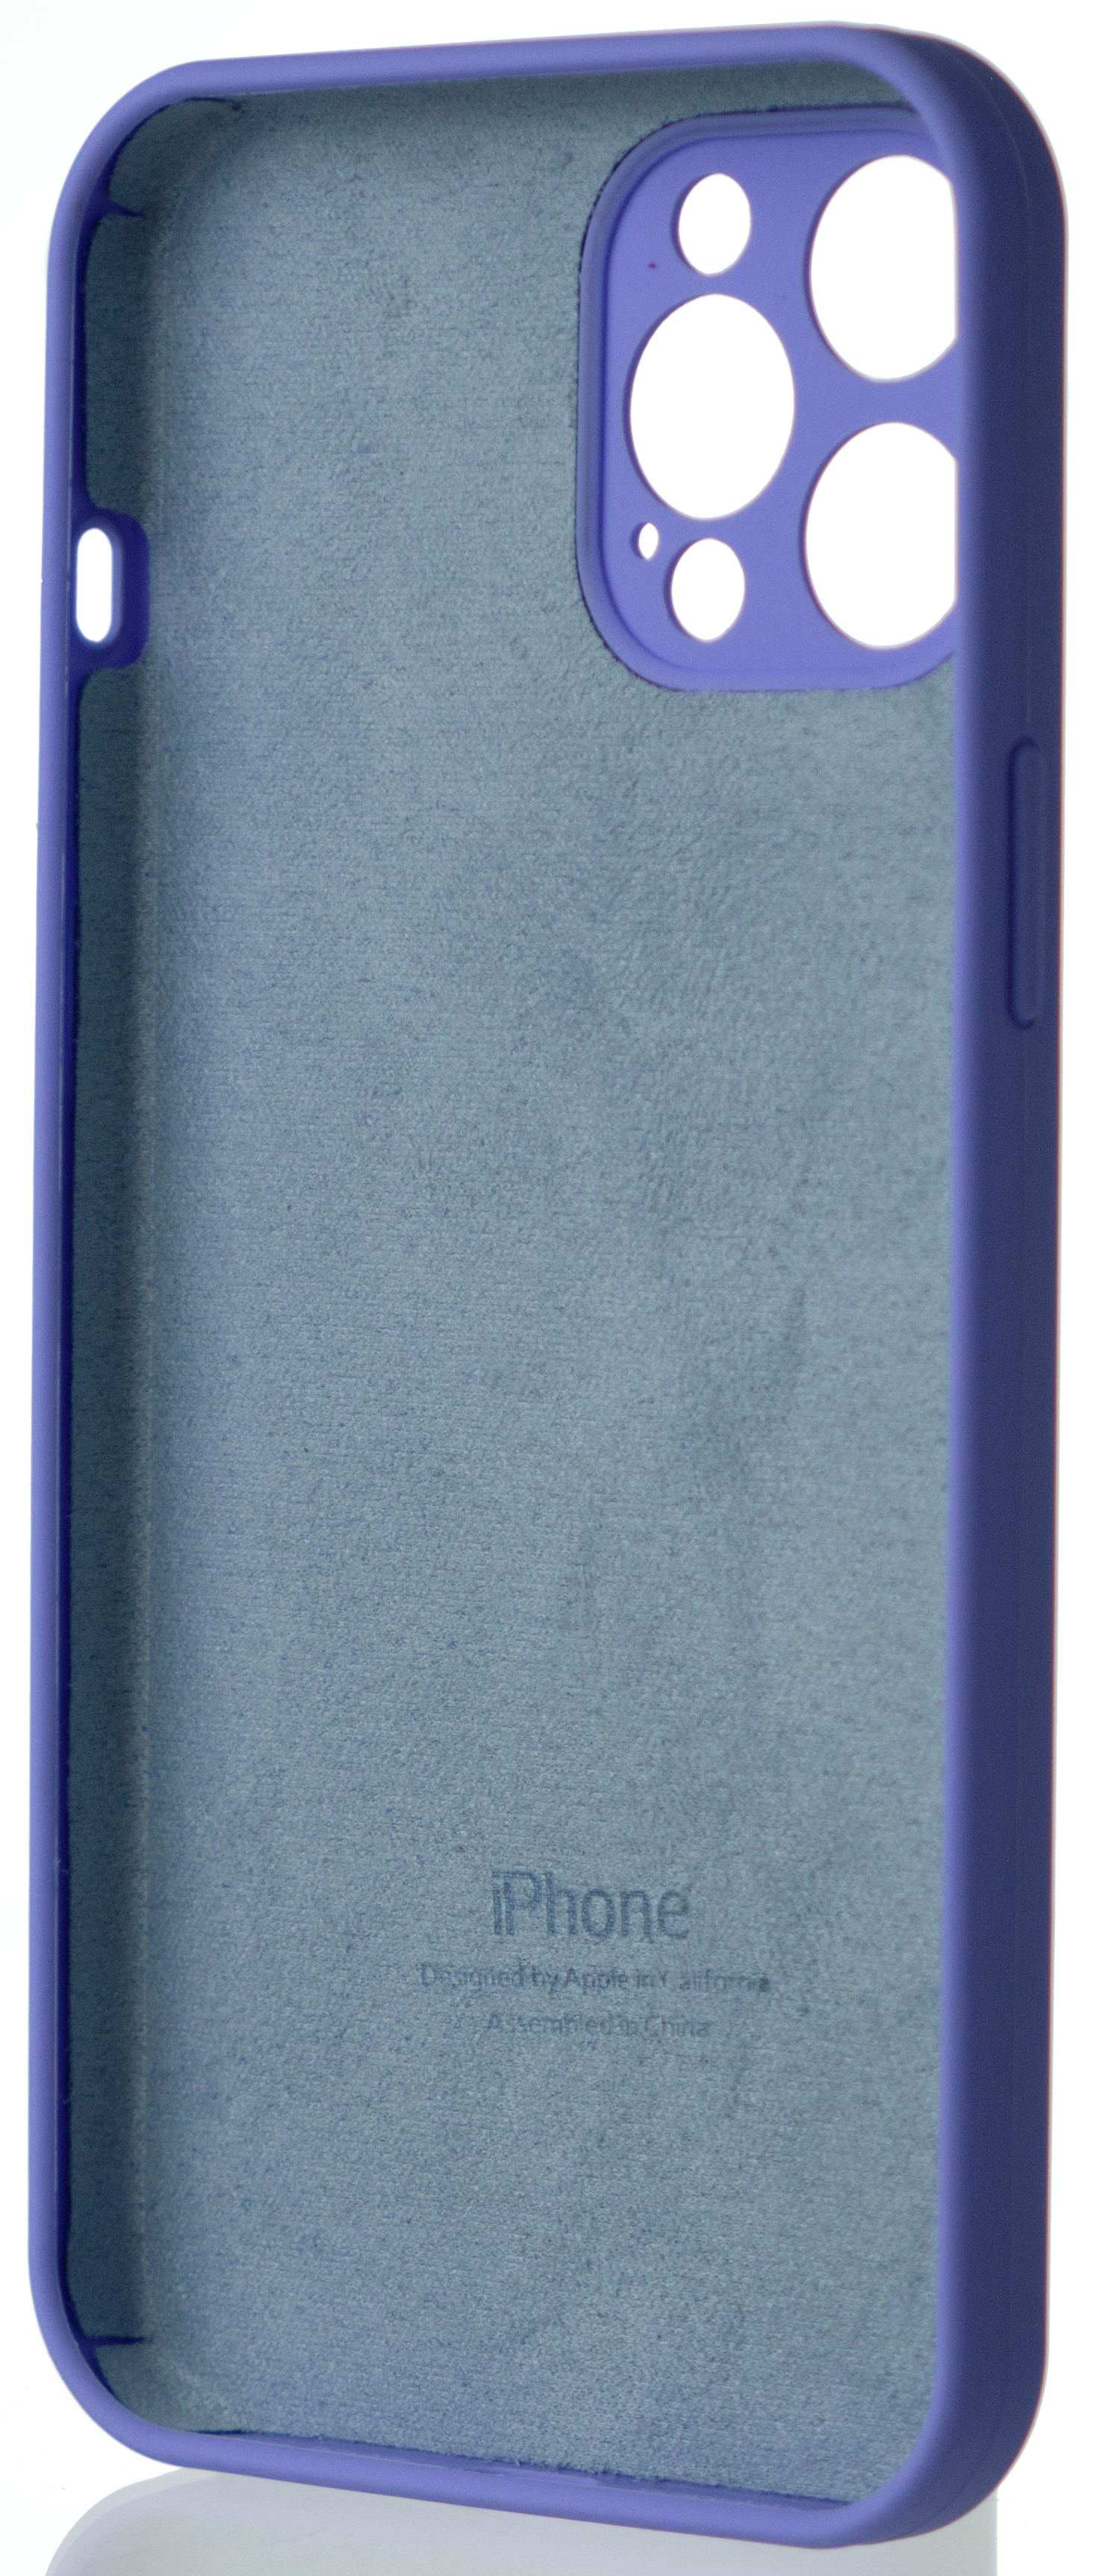 Чехол Silicone Case полная защита для iPhone 12 Pro Max лиловый